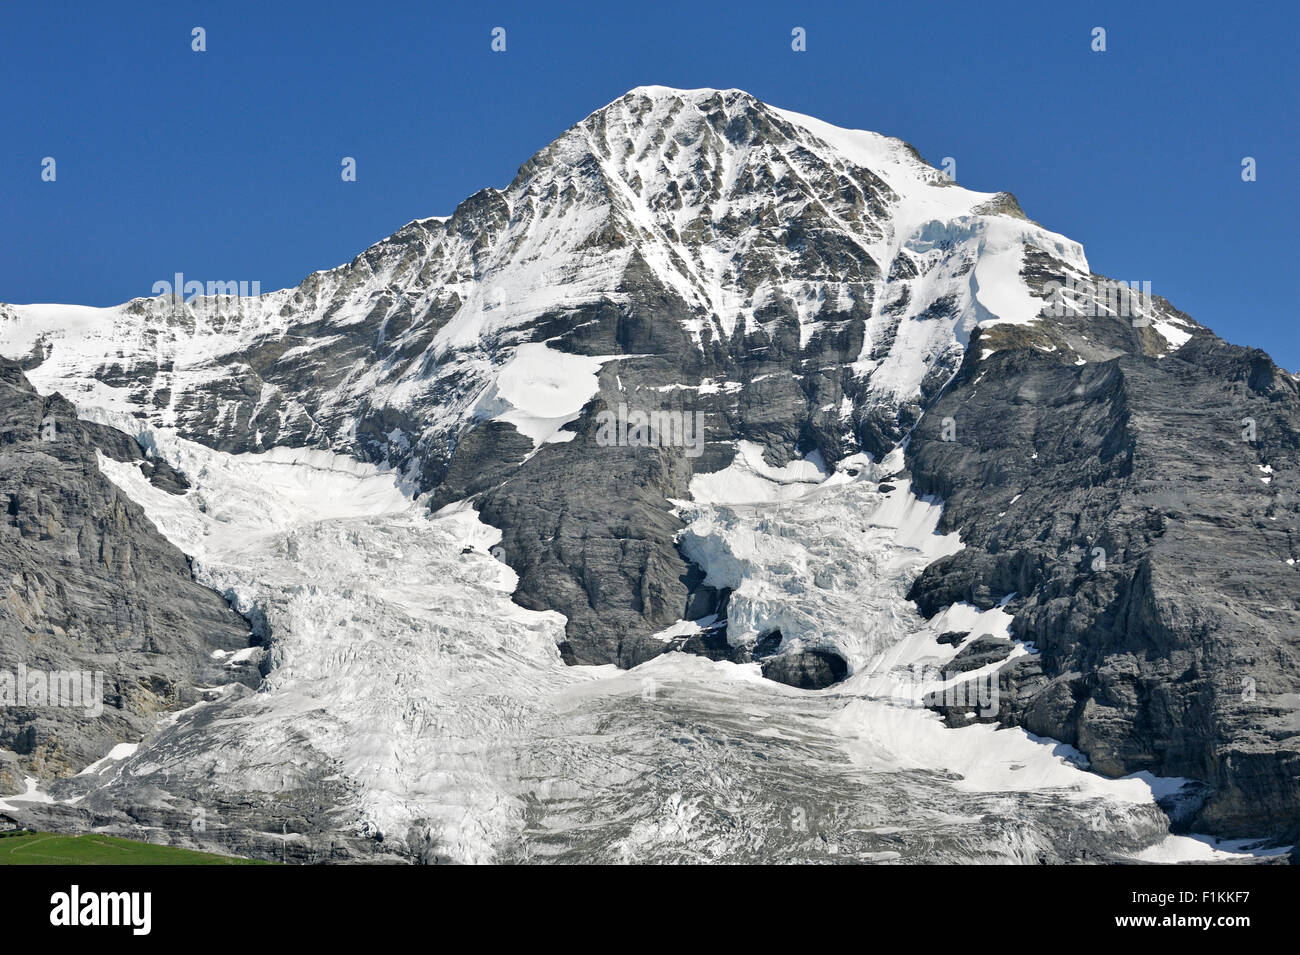 Nordwand des Eiger, gehört zu einem Bergrücken zwischen der Jungfrau und Eiger in den Berner Alpen, Schweiz Stockfoto